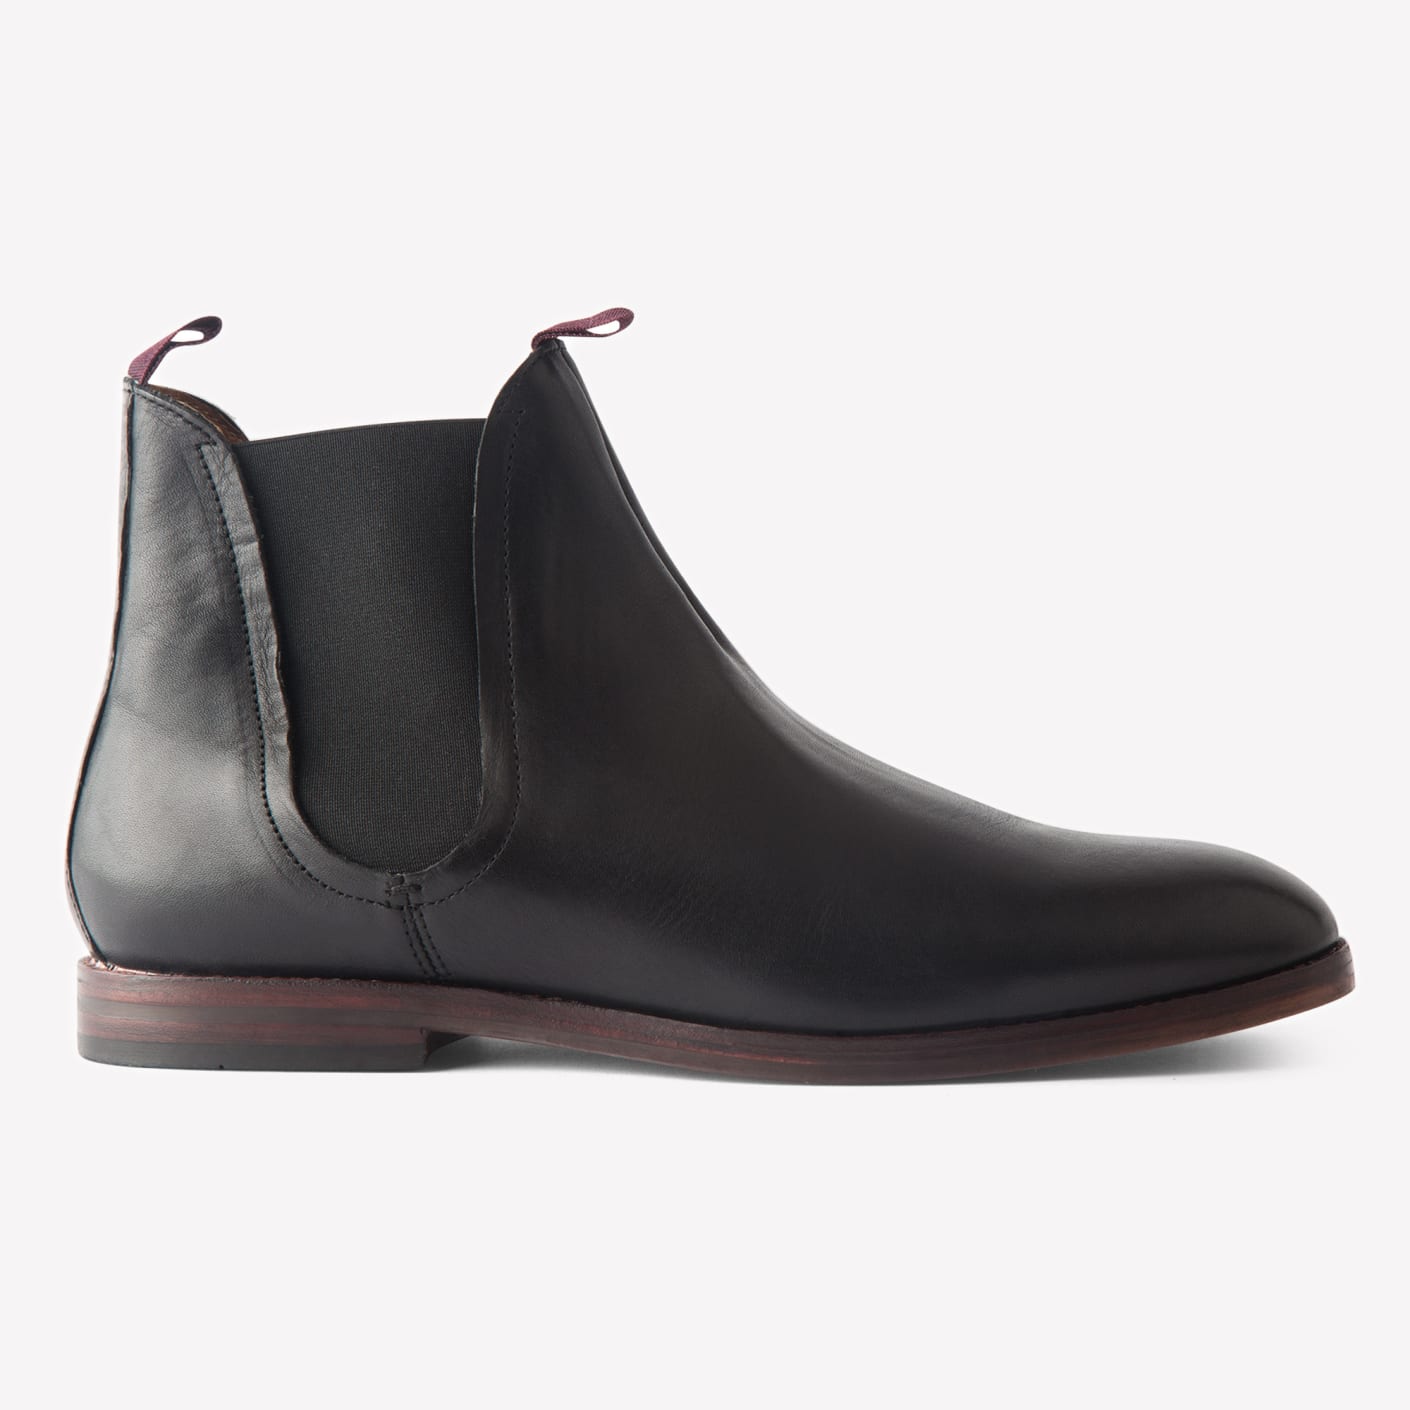 Hudson Shoes Tamper Black Boot | Bespoke Post